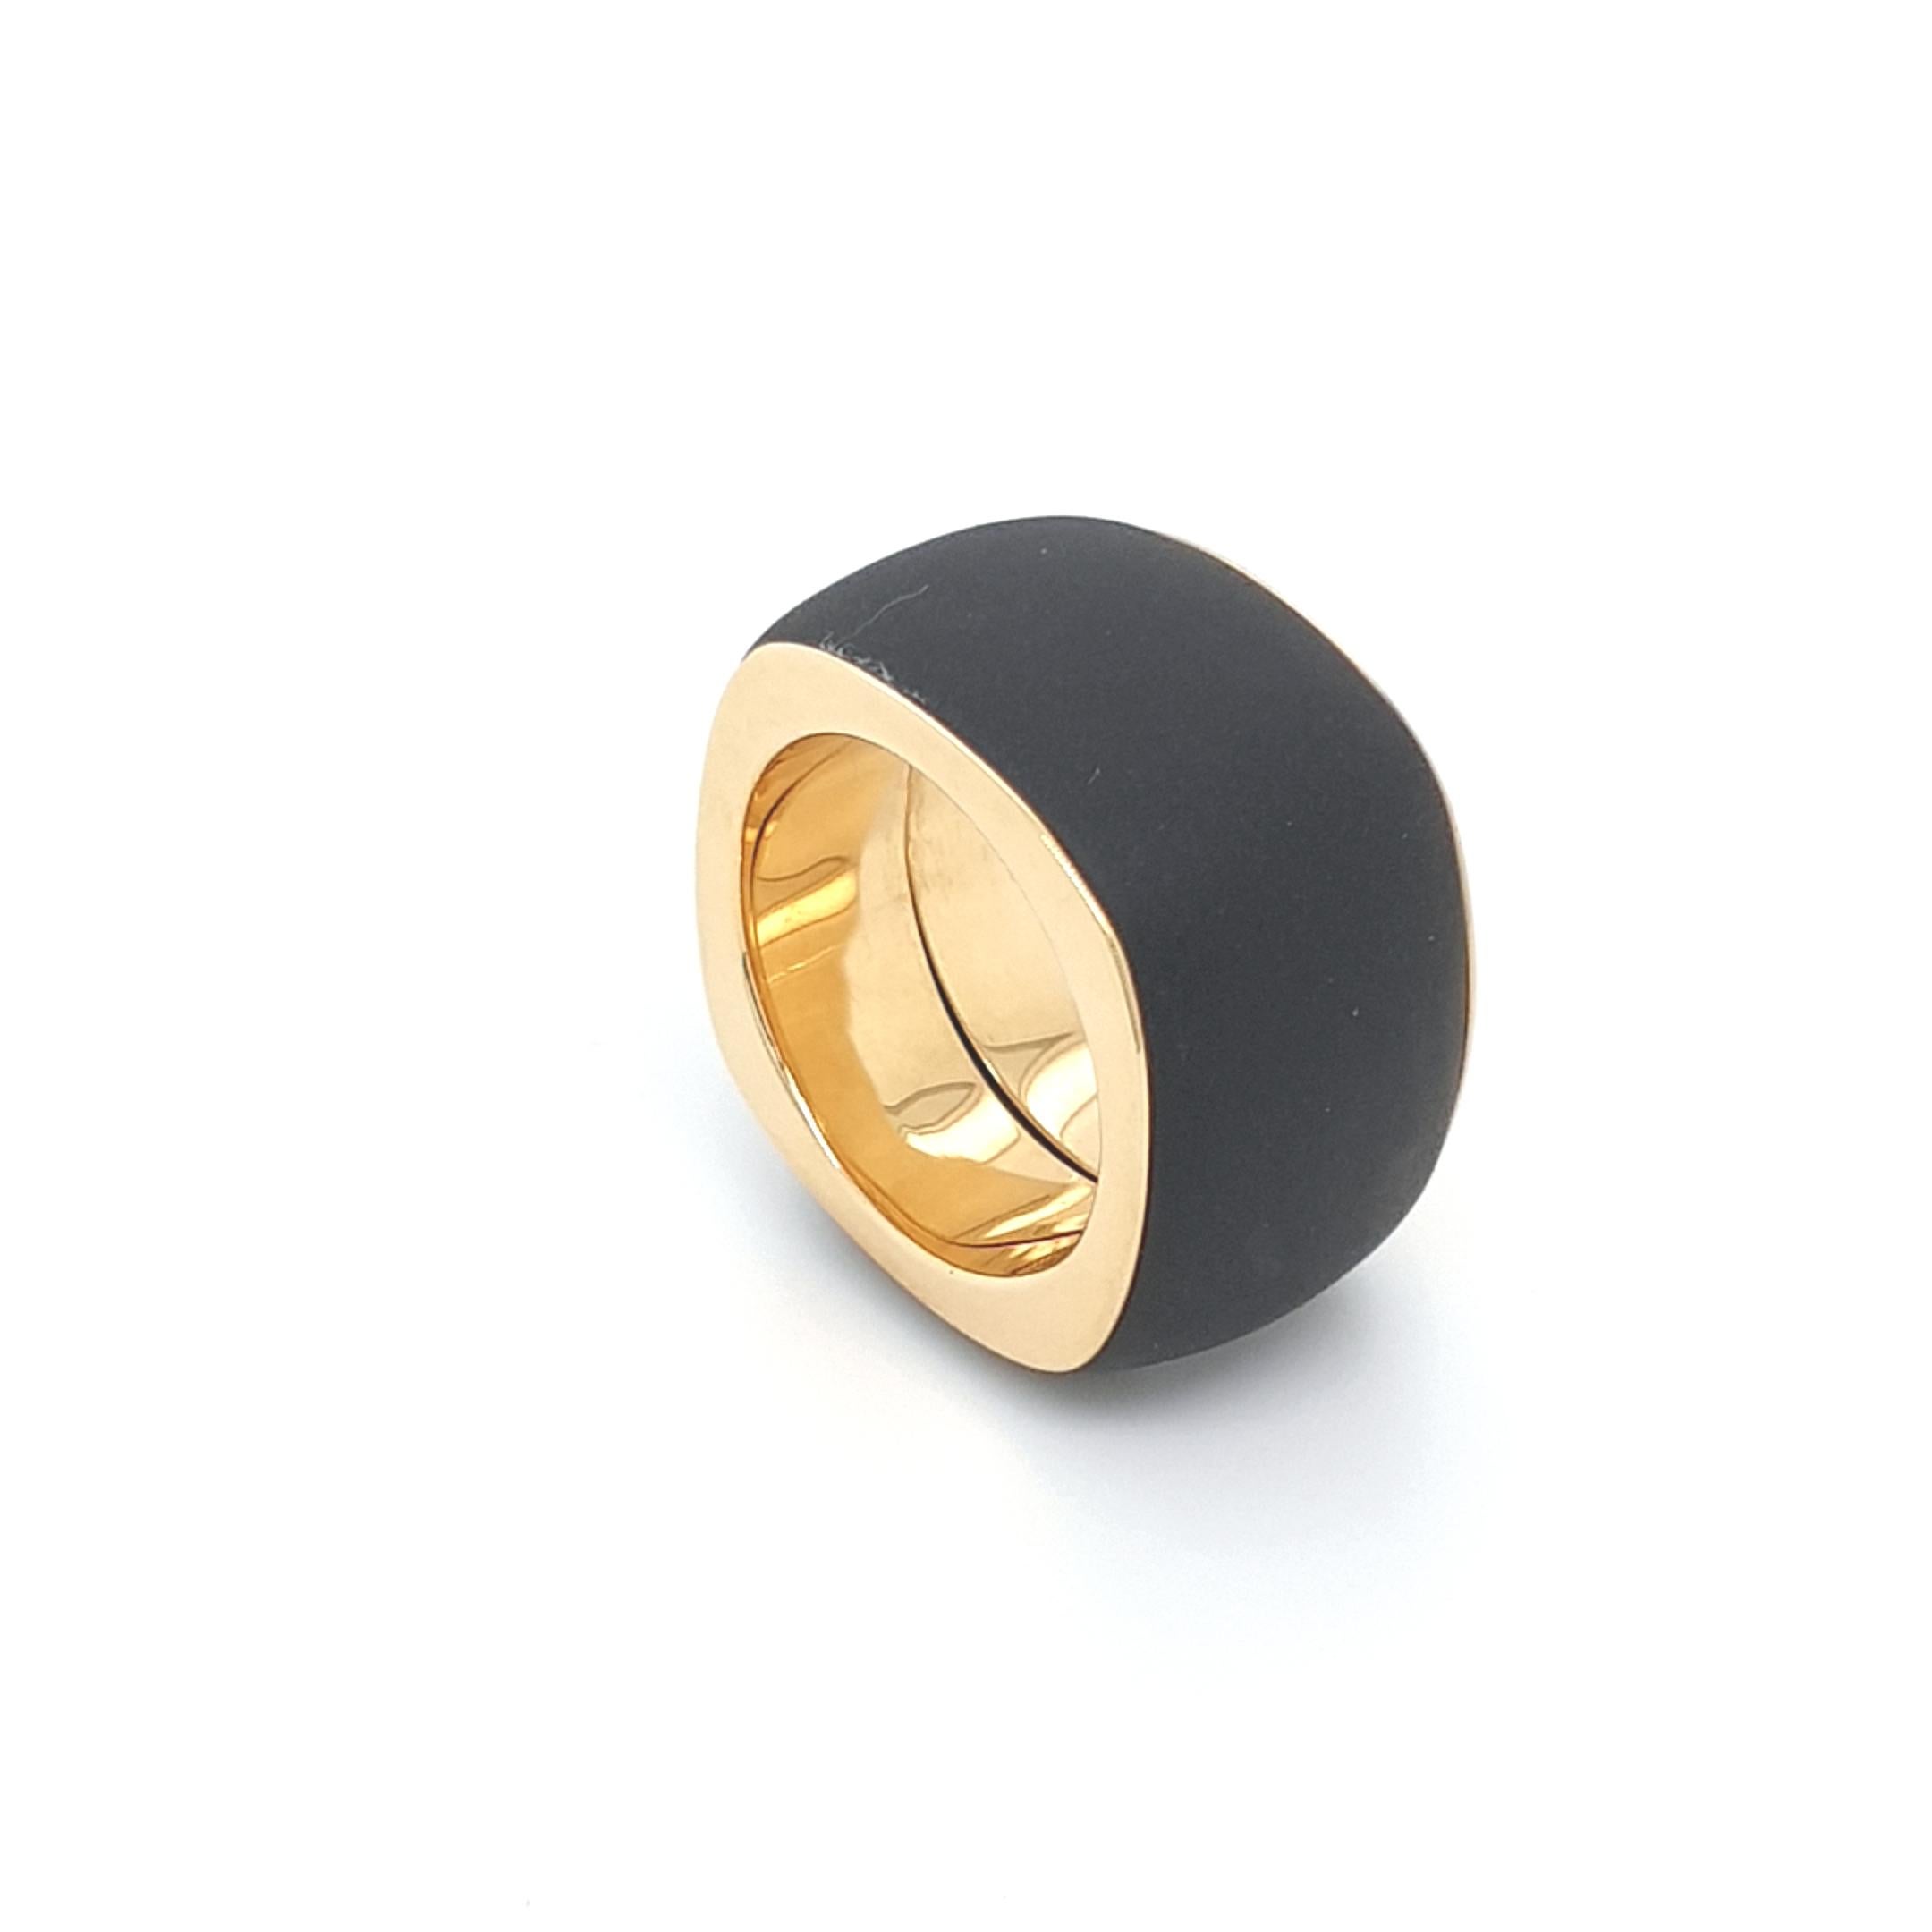 Dieser Schwarzer Achat Onyx Ring mit 18 Karat Gelbgold ist komplett handgefertigt und aus einem Stück geschliffen.
Sowohl das Schneiden als auch die Vergoldung sind in deutscher Qualität ausgeführt.
Die Kissenform mit halbpoliertem Onyx kombiniert